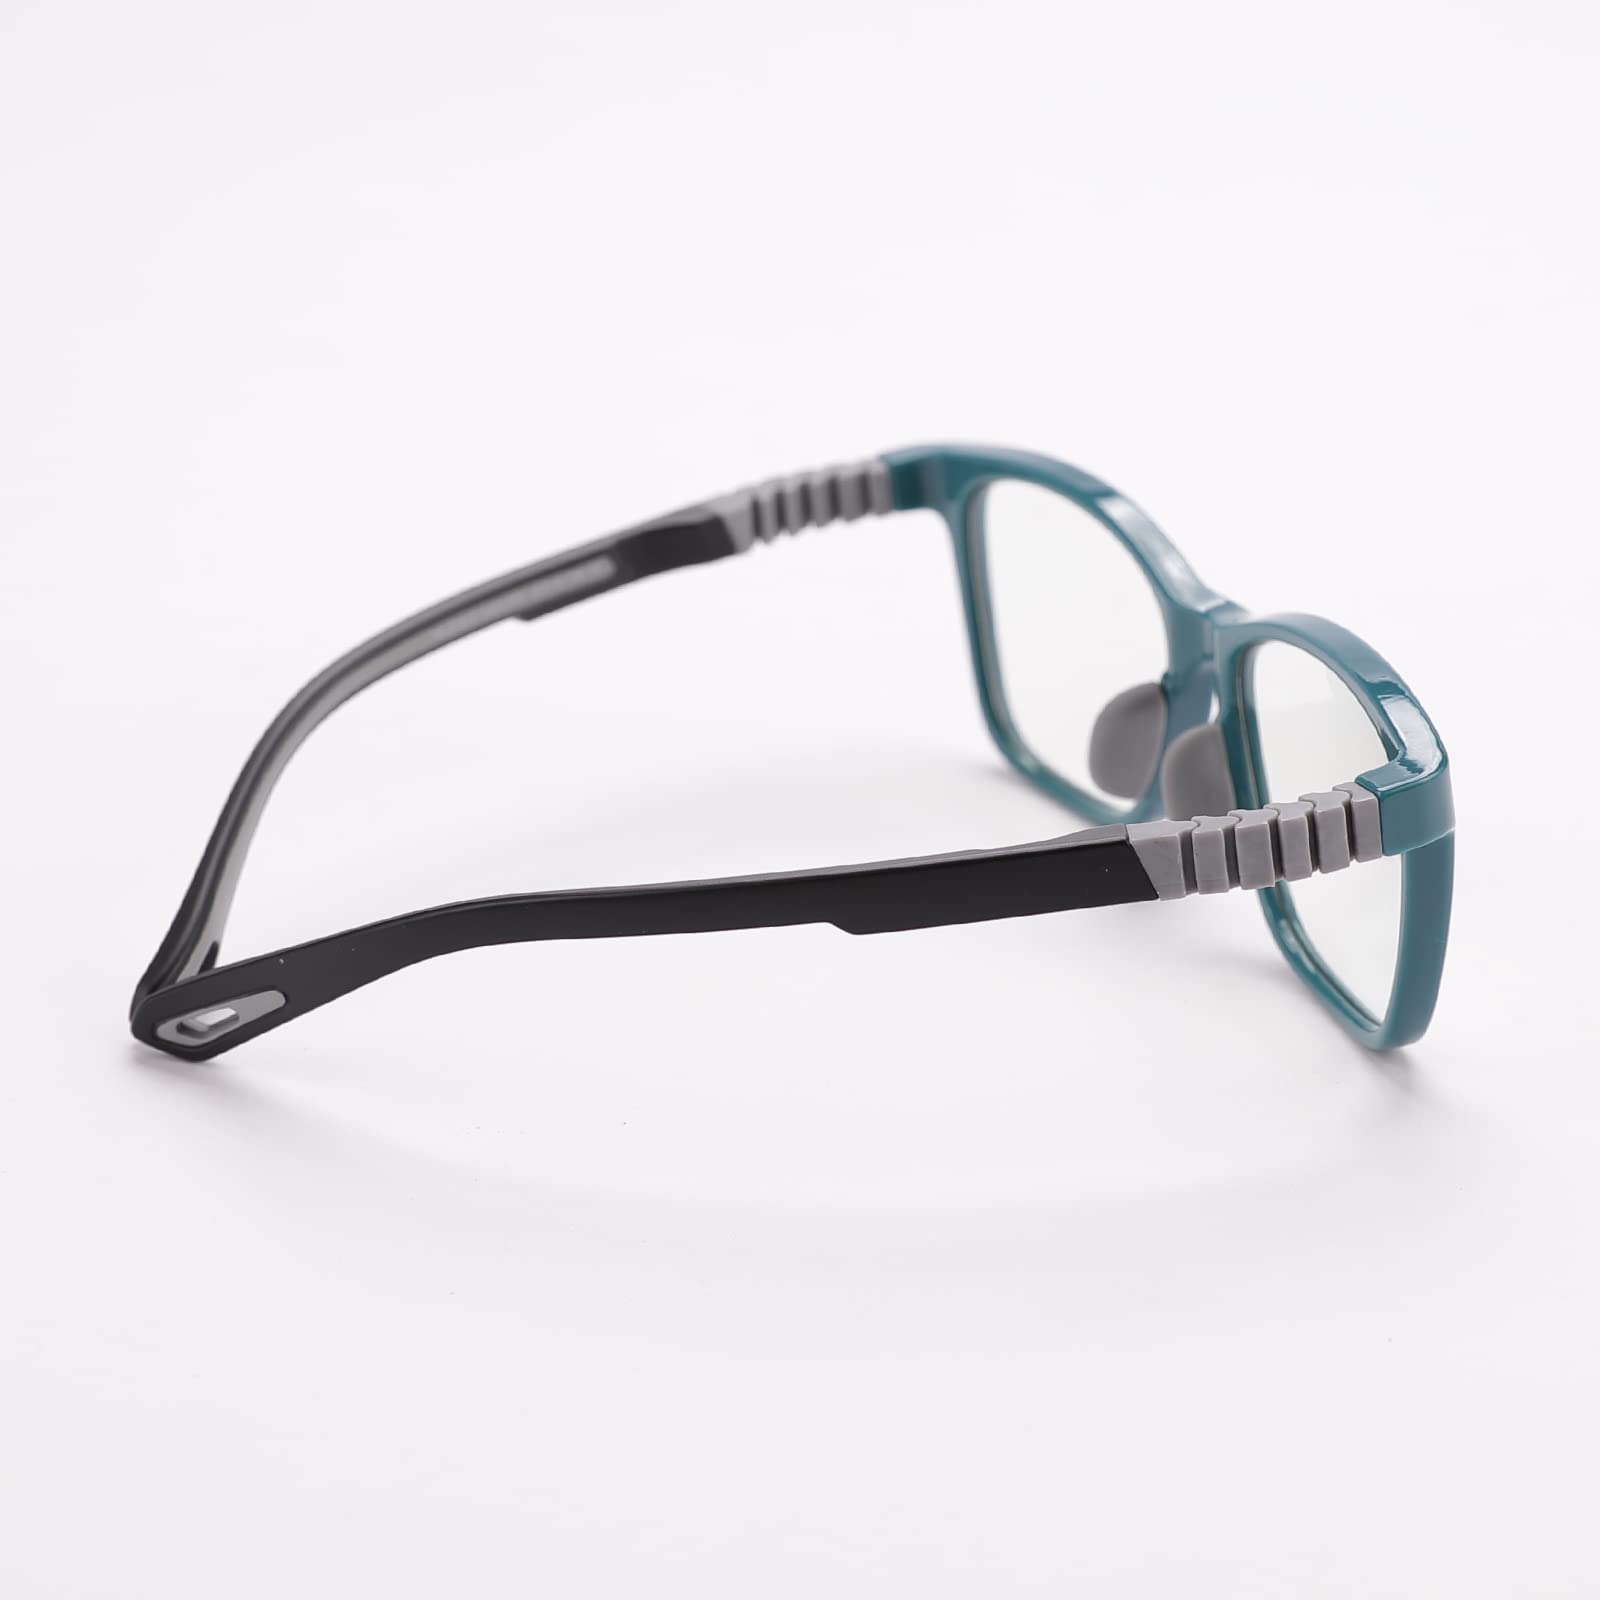 Intellilens Wayfarer Kids Computer Glasses for Eye Protection | Zero Power, Anti Glare & Blue Light Filter Glasses | Blue Cut Lenses for Boys and Girls (Green) (49-15-130)